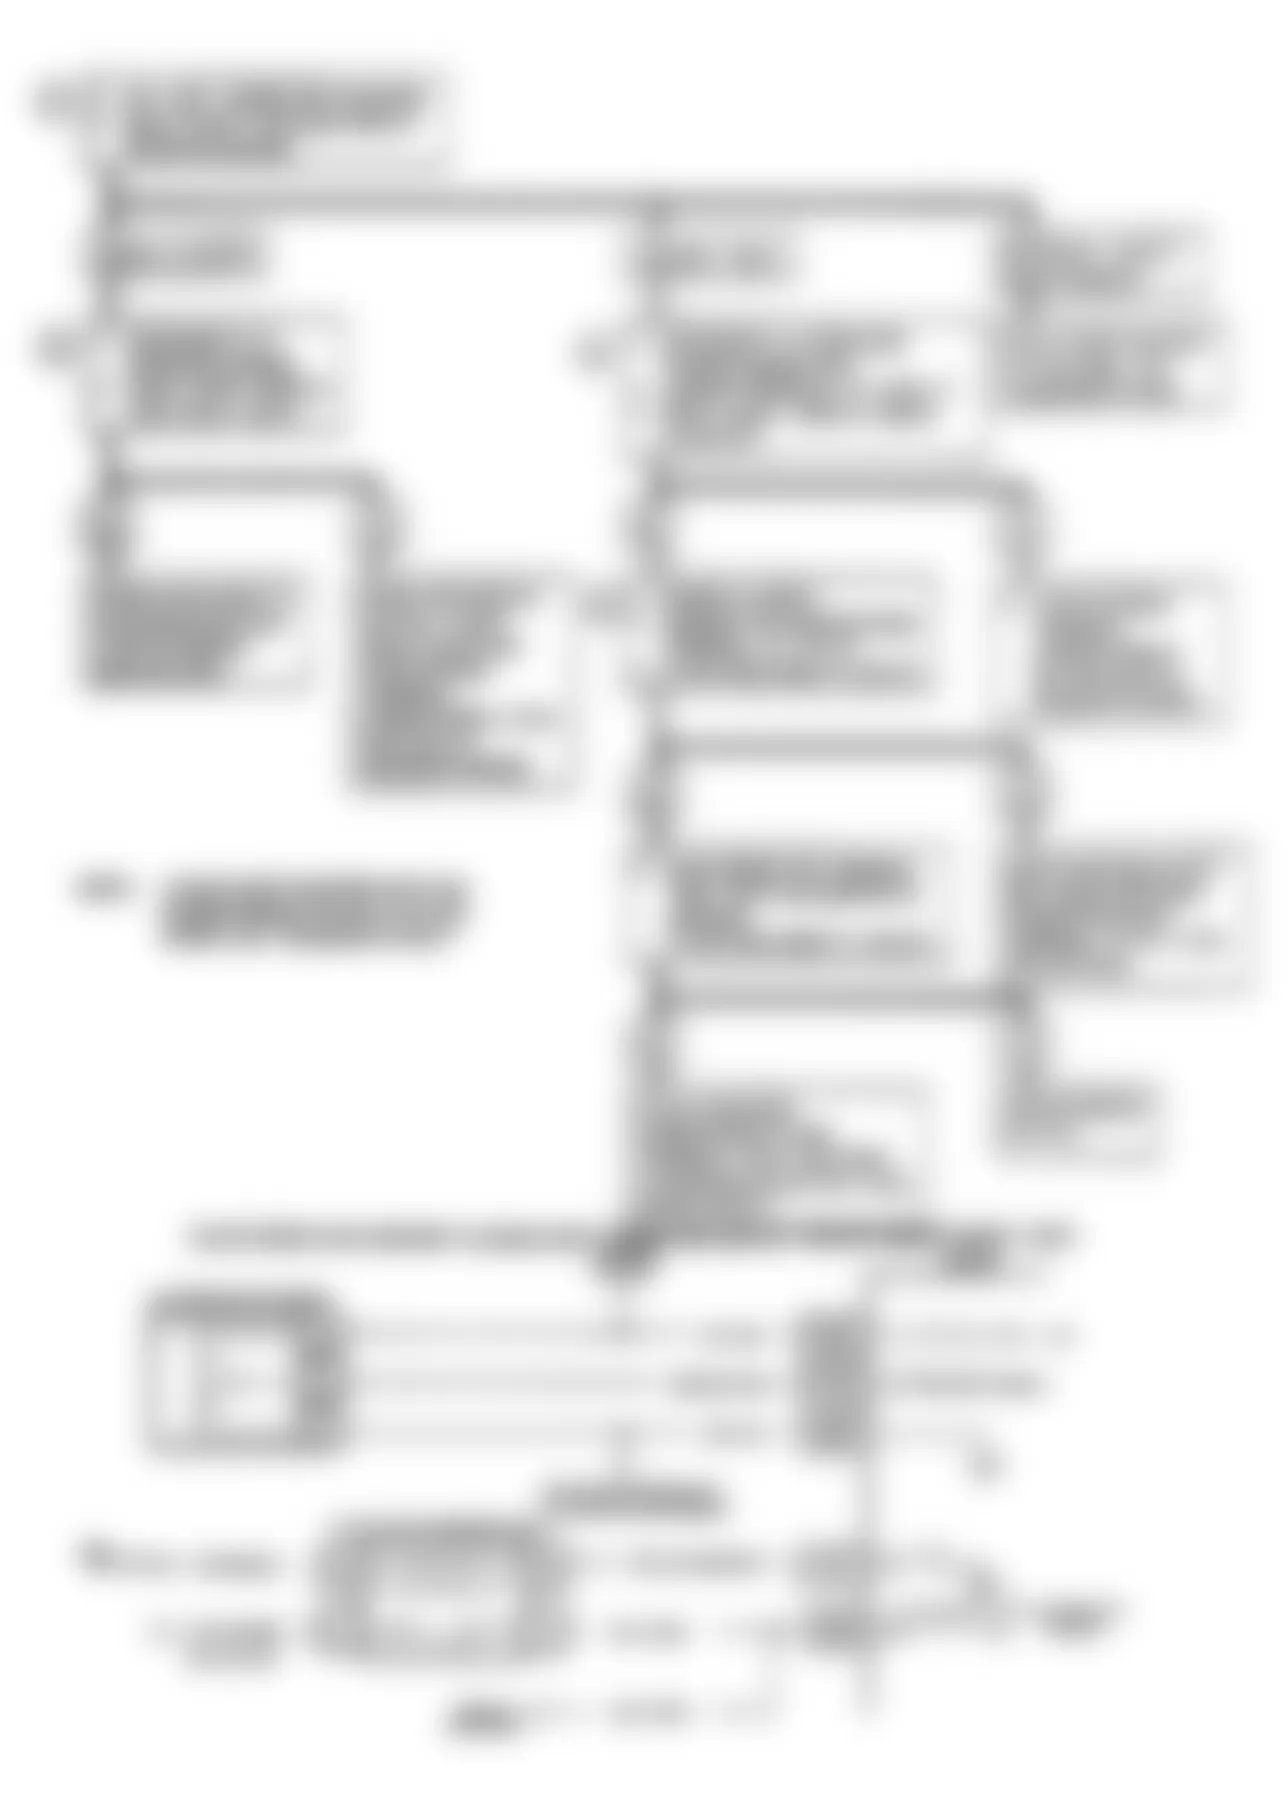 Buick Regal Custom 1990 - Component Locations -  Code 66: A/C Pressure Sensor Schematic & Flow Chart (J Body)